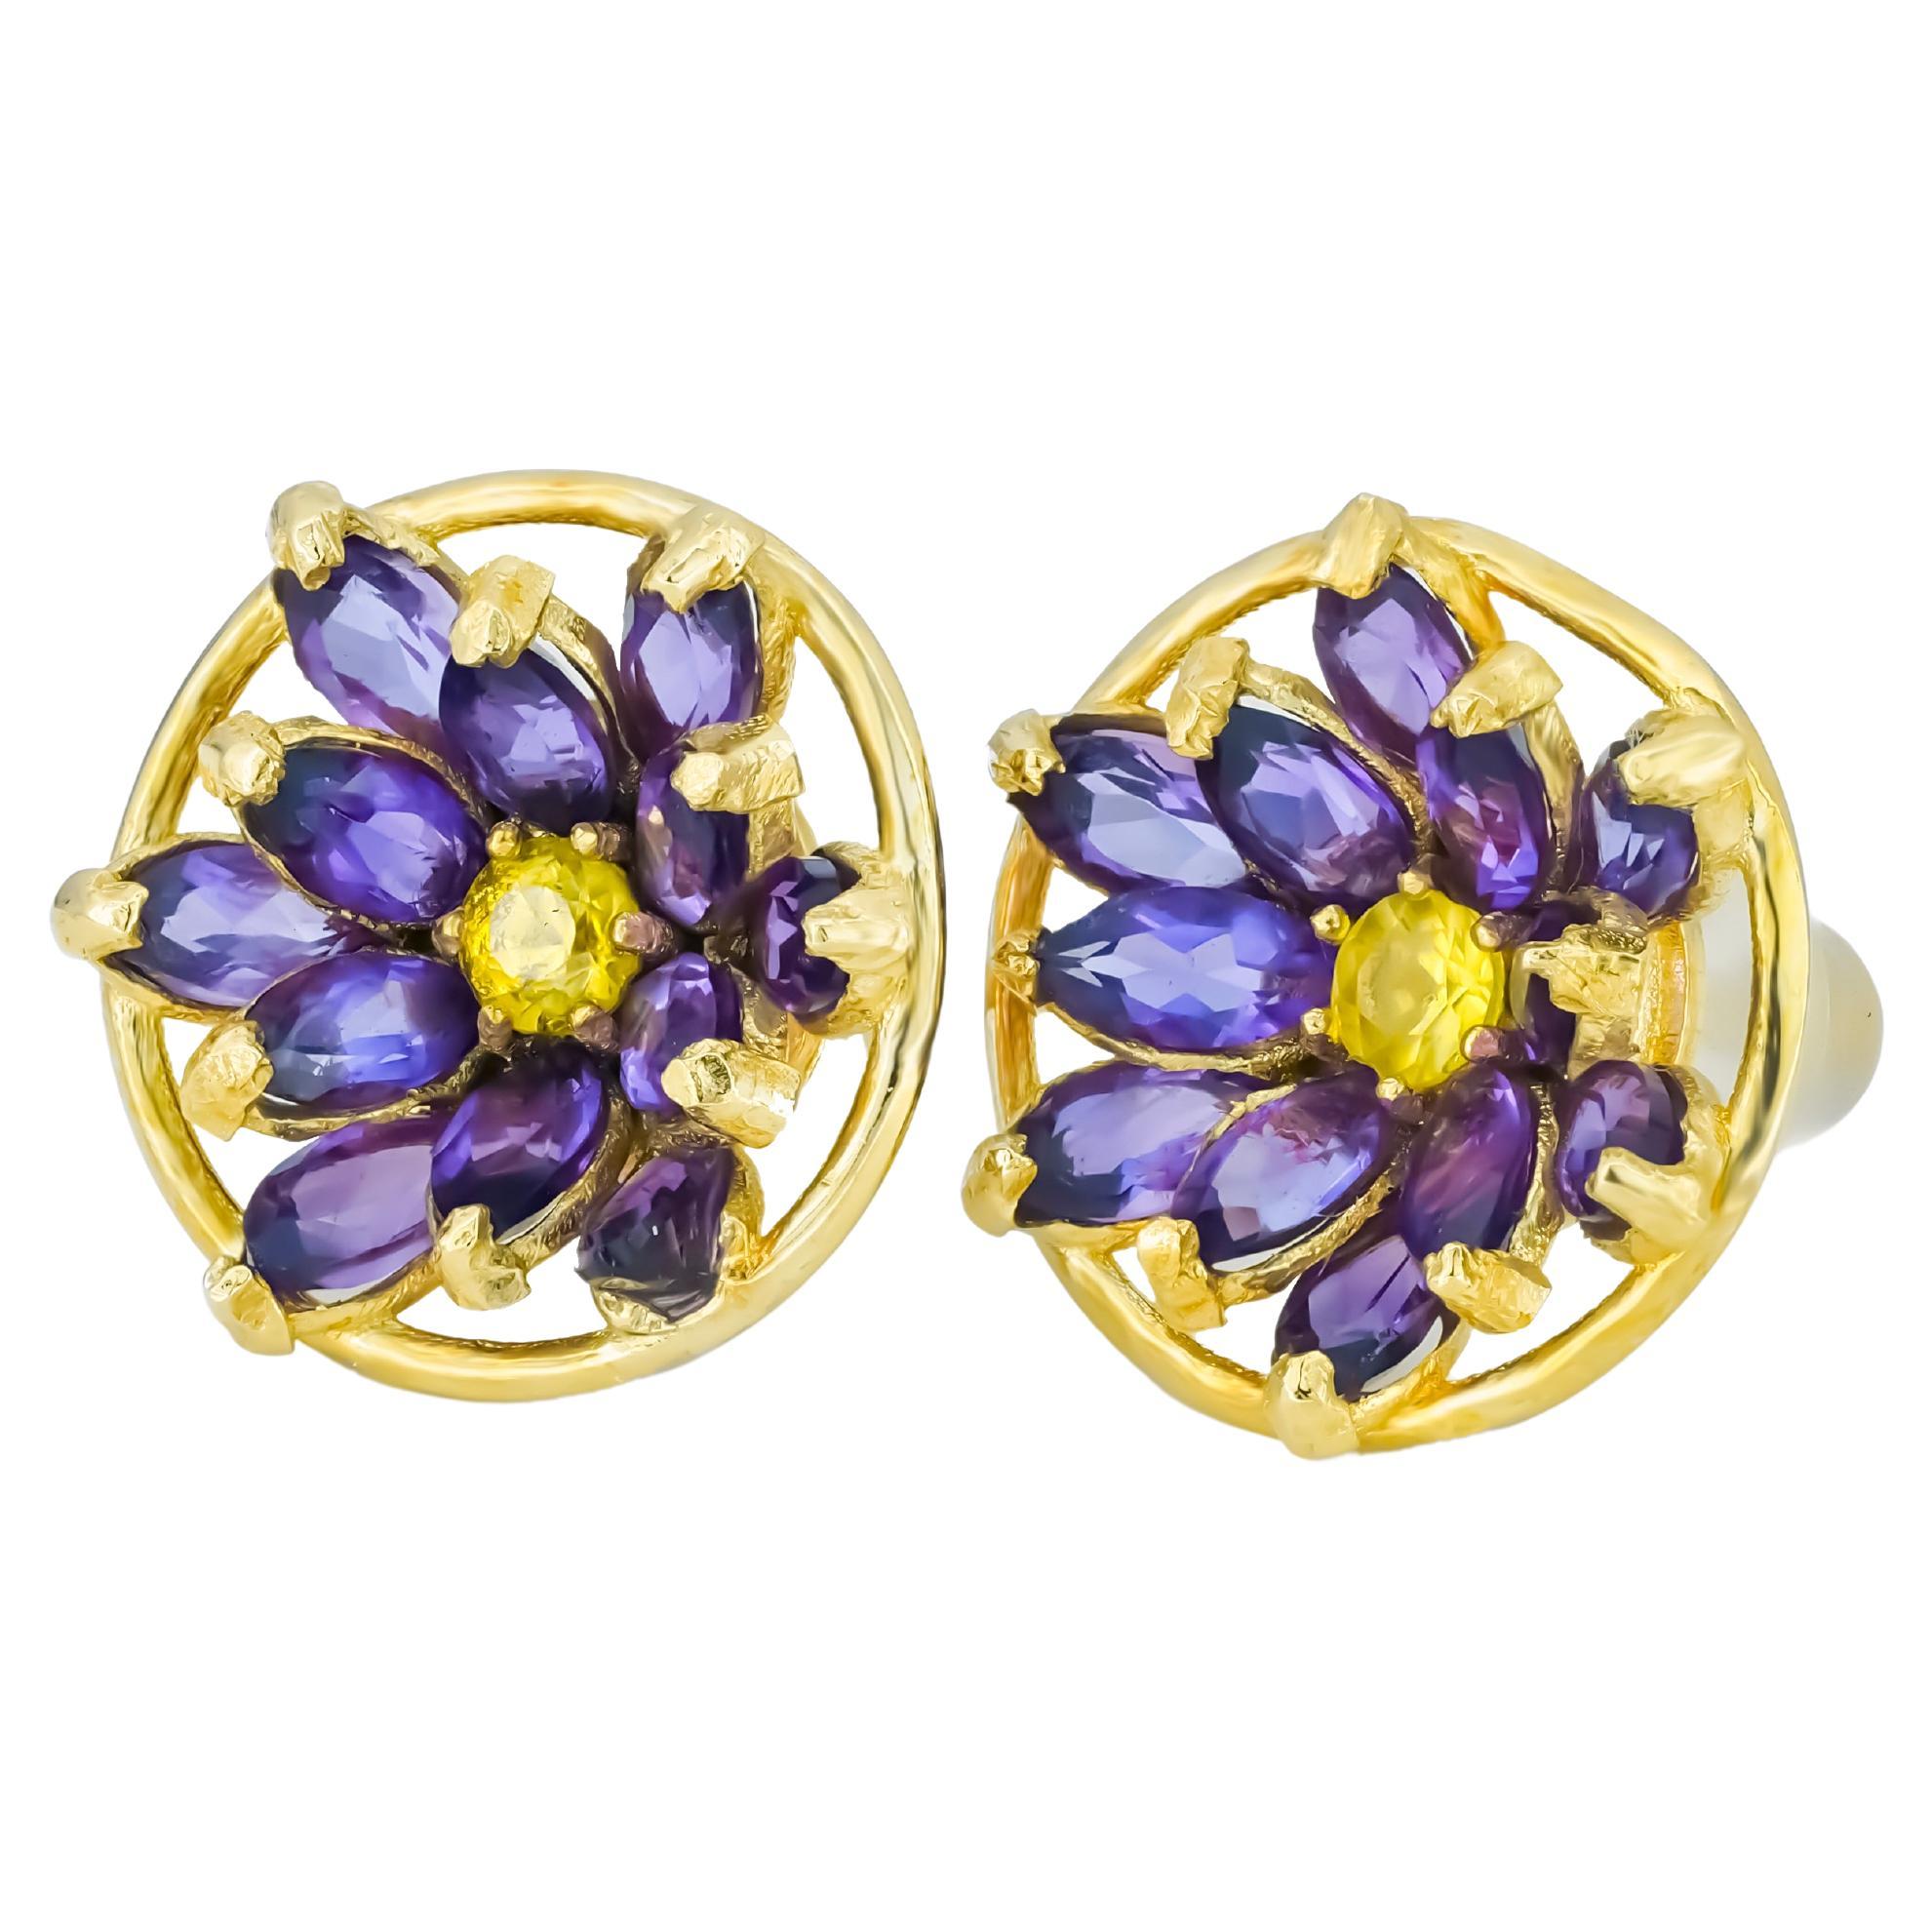 Lotus Flower Earrings Studs in 14K Gold, Amethyst and Sapphires Earrings